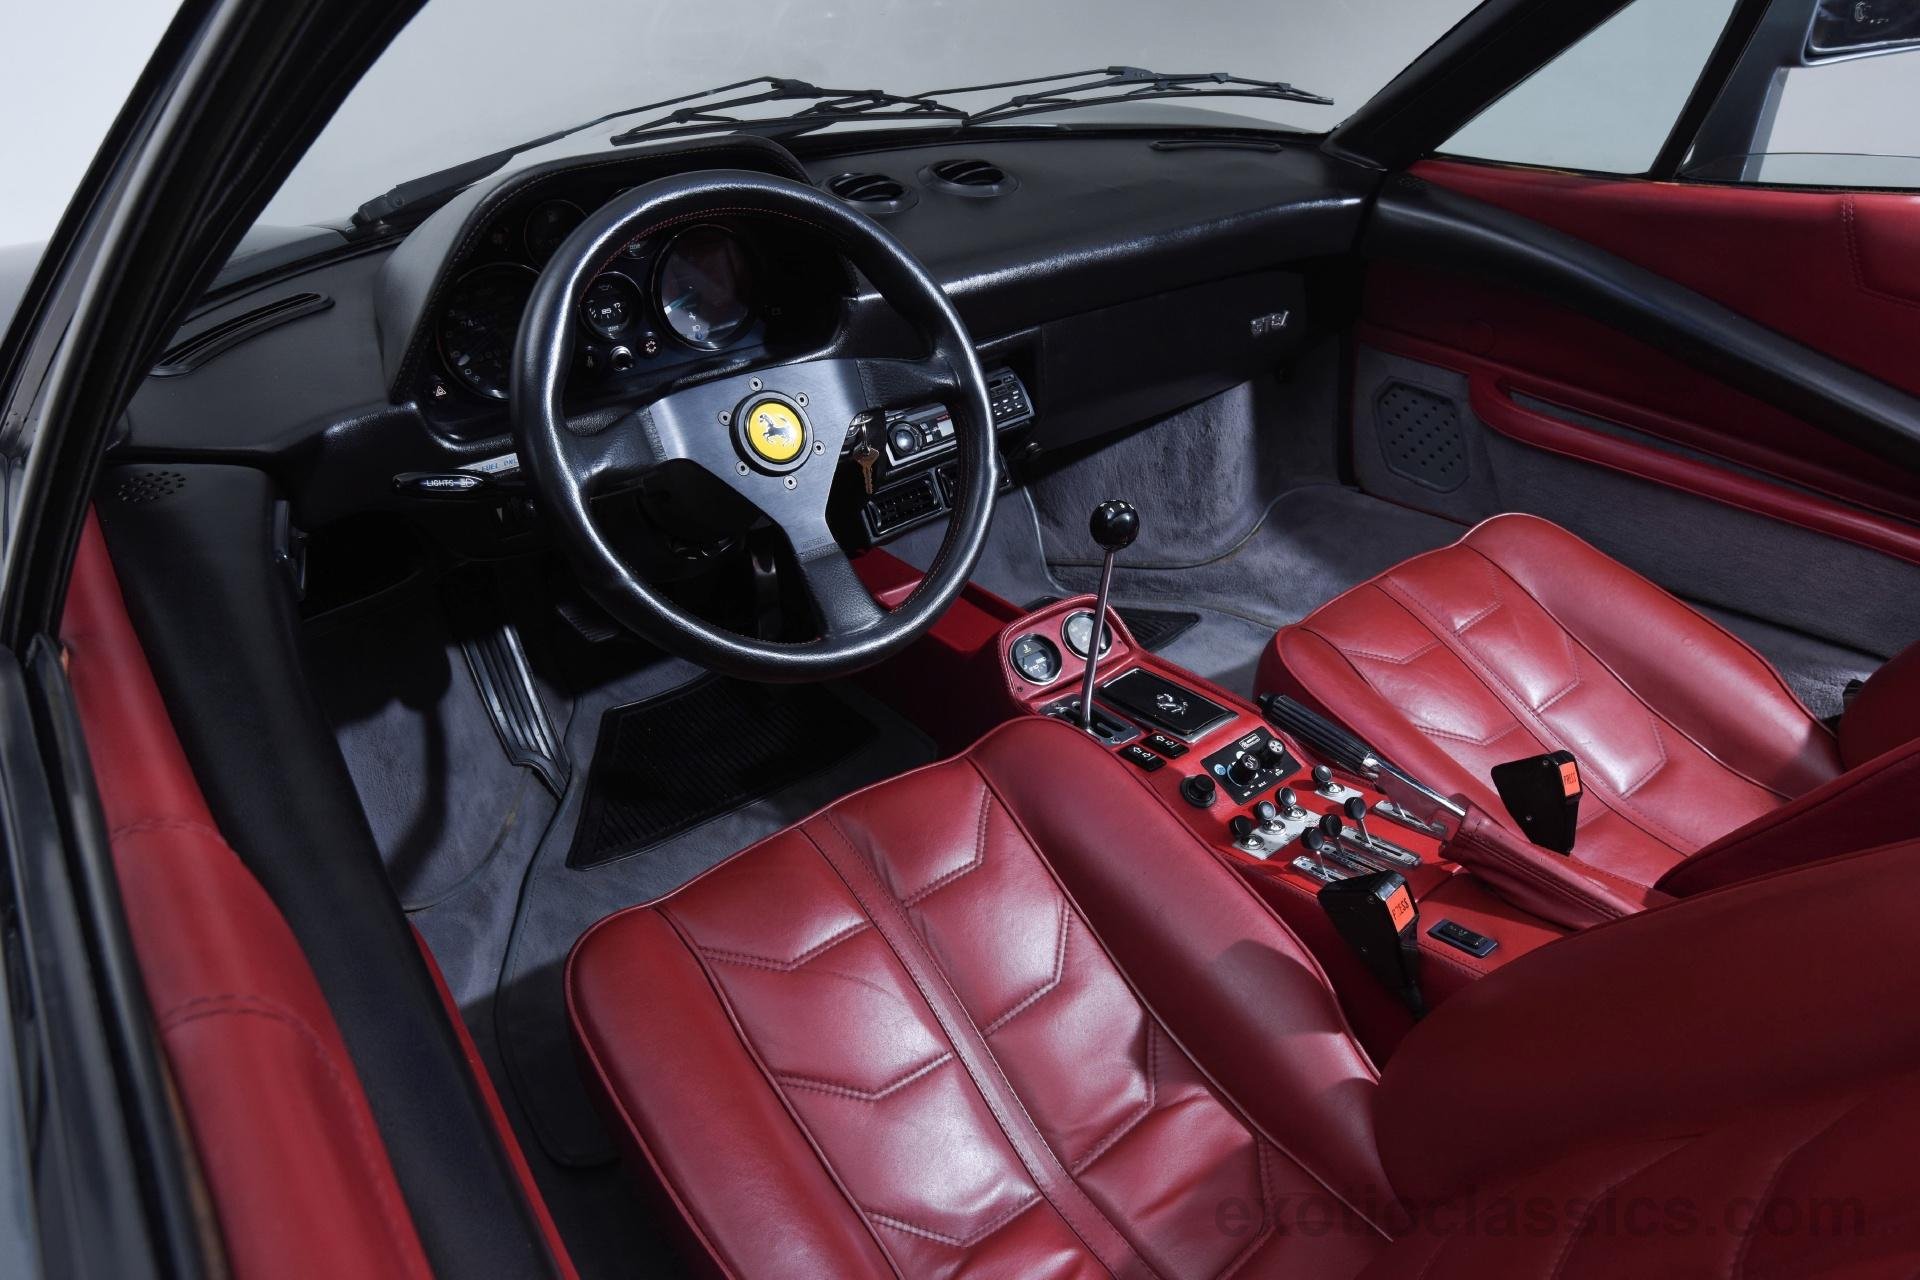 1985, Ferrari, 308qv, Supercar, 308 Wallpaper